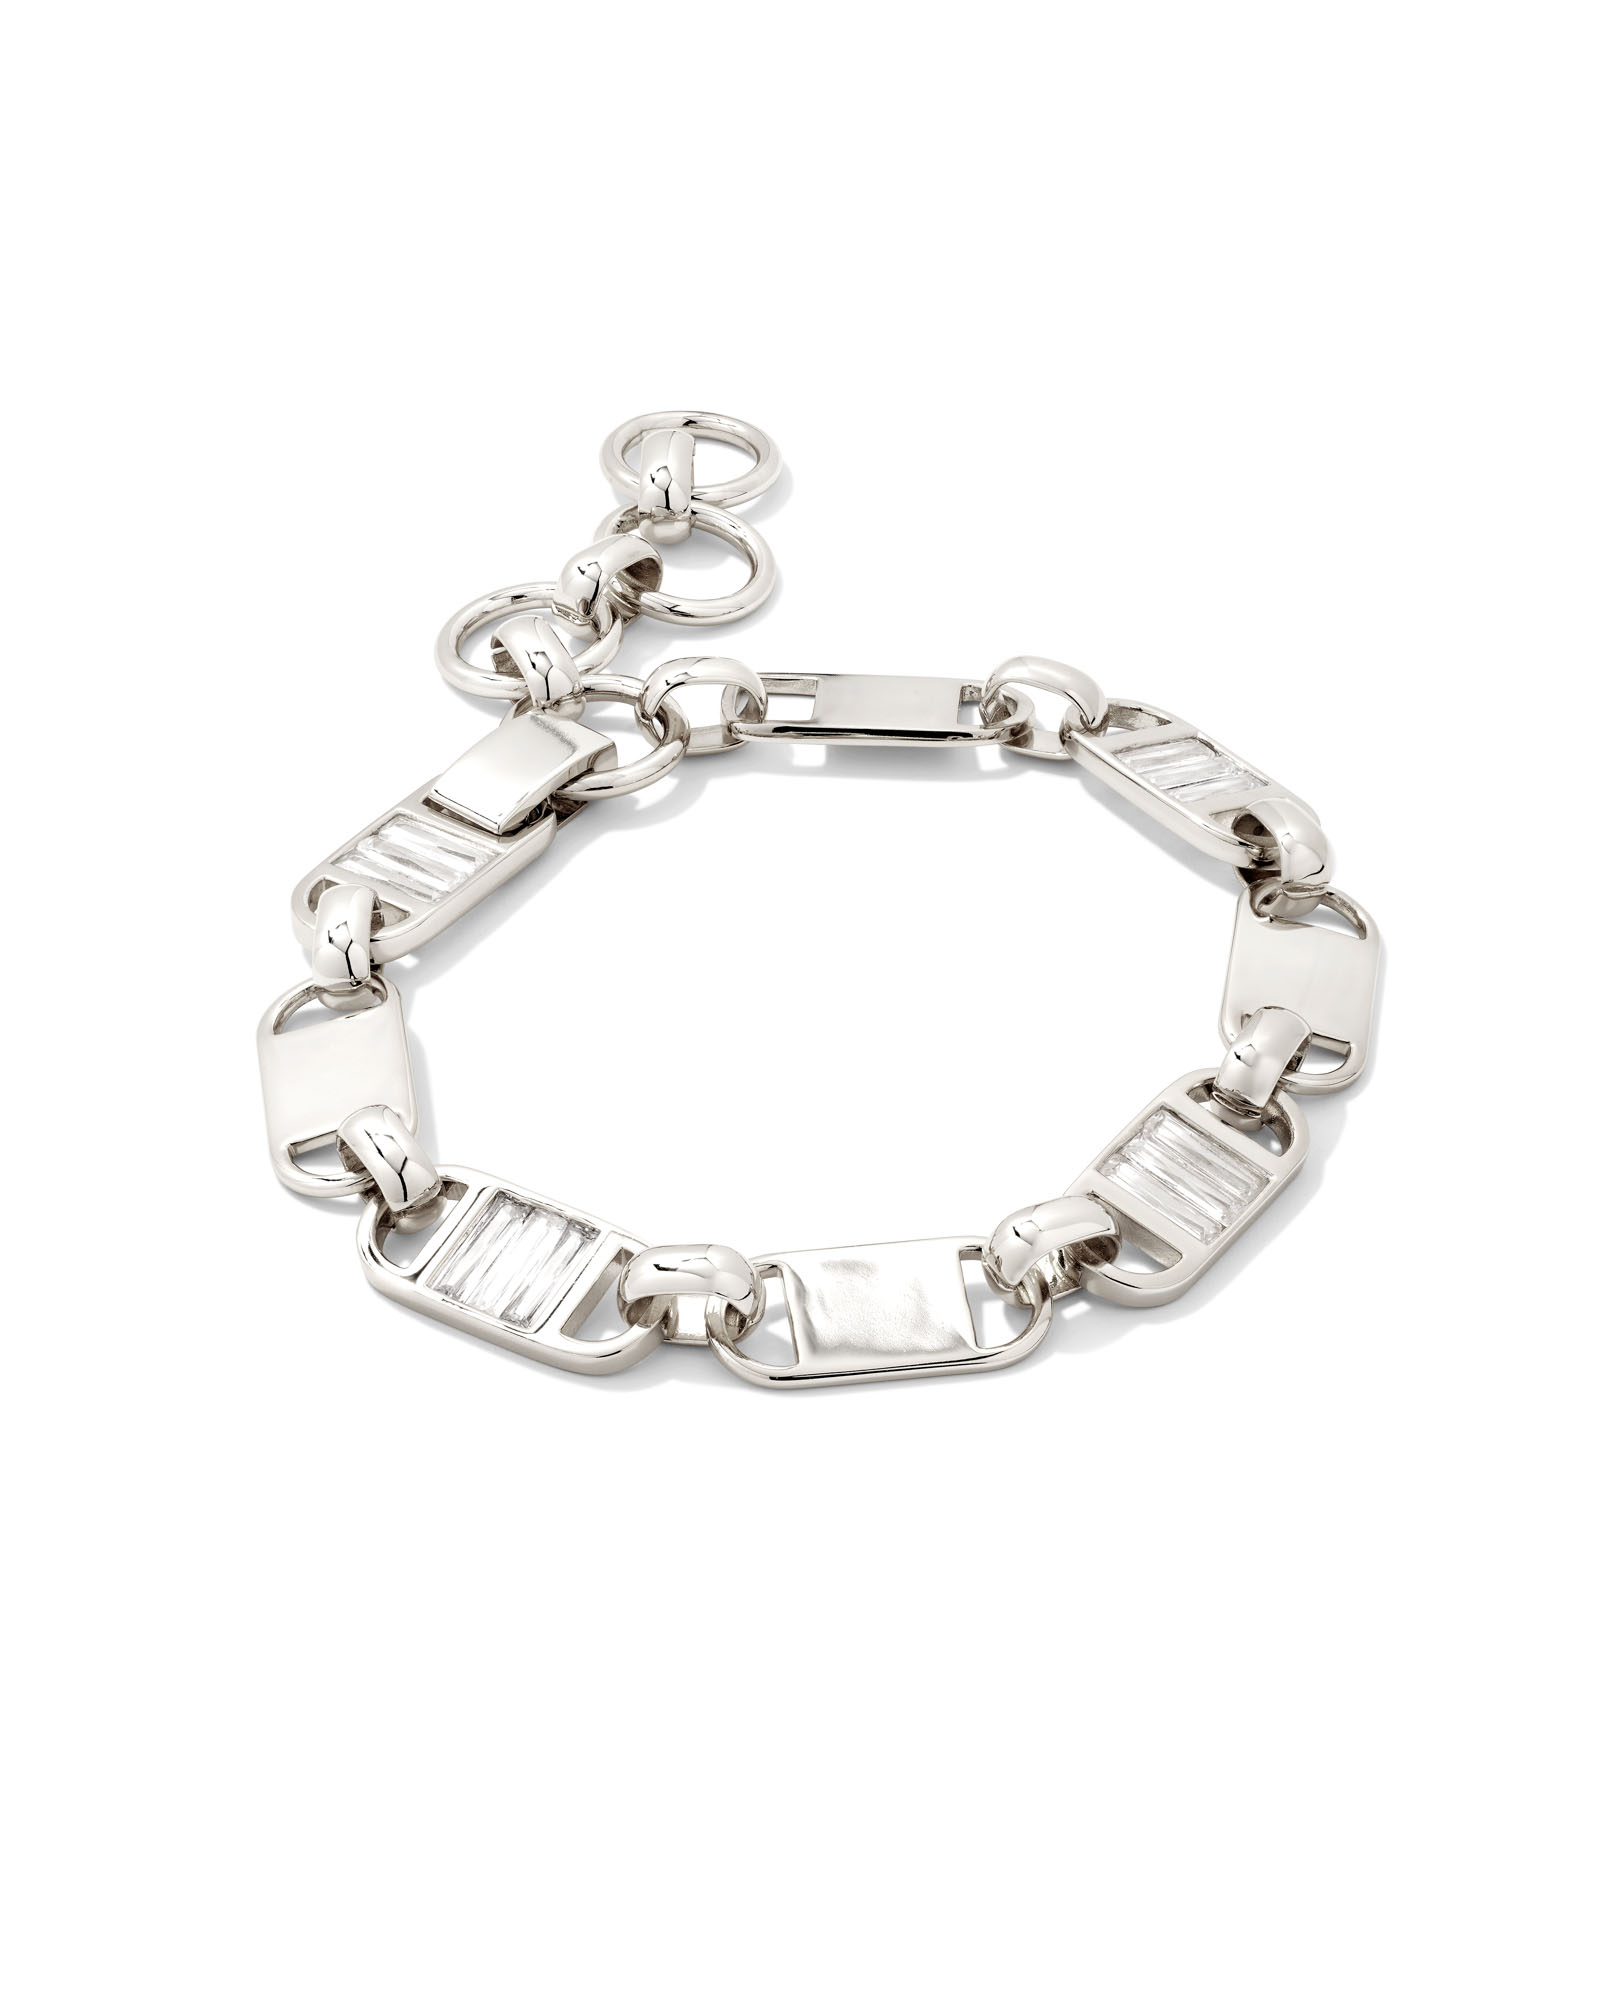 Herringbone Chain Bracelet in Sterling Silver | Kendra Scott